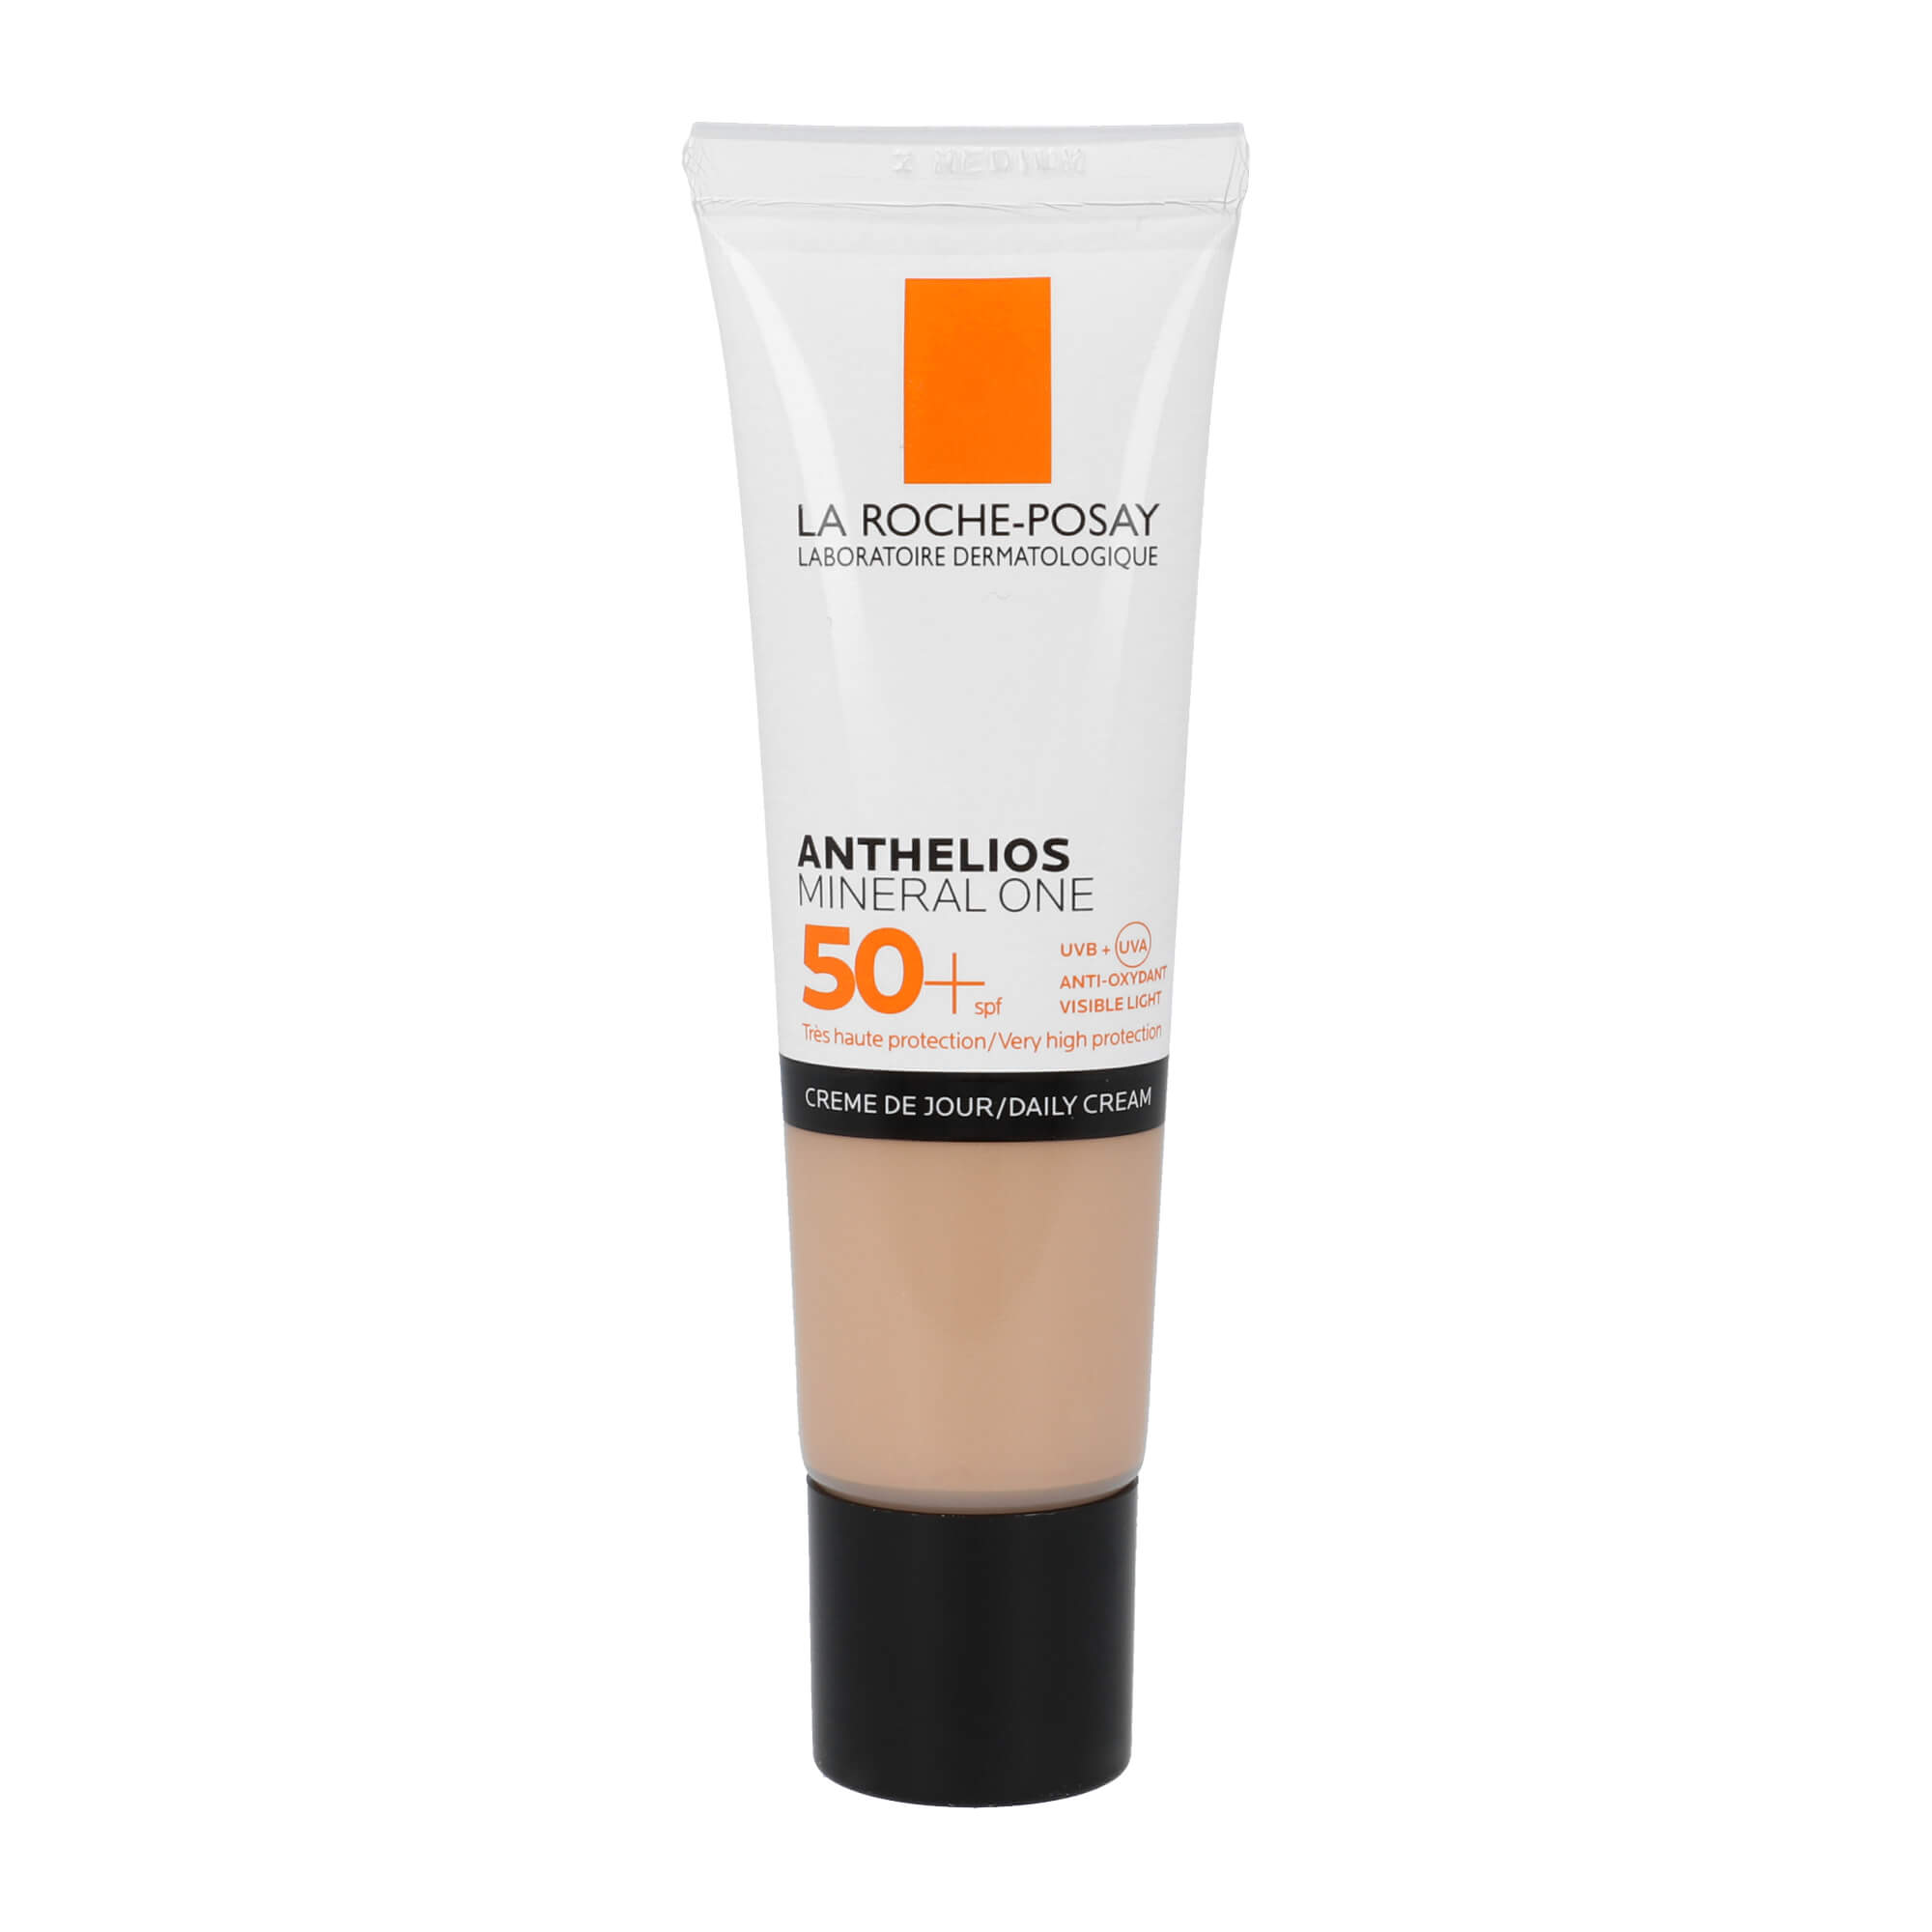 Für empfindliche Haut geeignet und mit 100% mineralischen UV-Filter. Nuance: Moyenne / Medium.